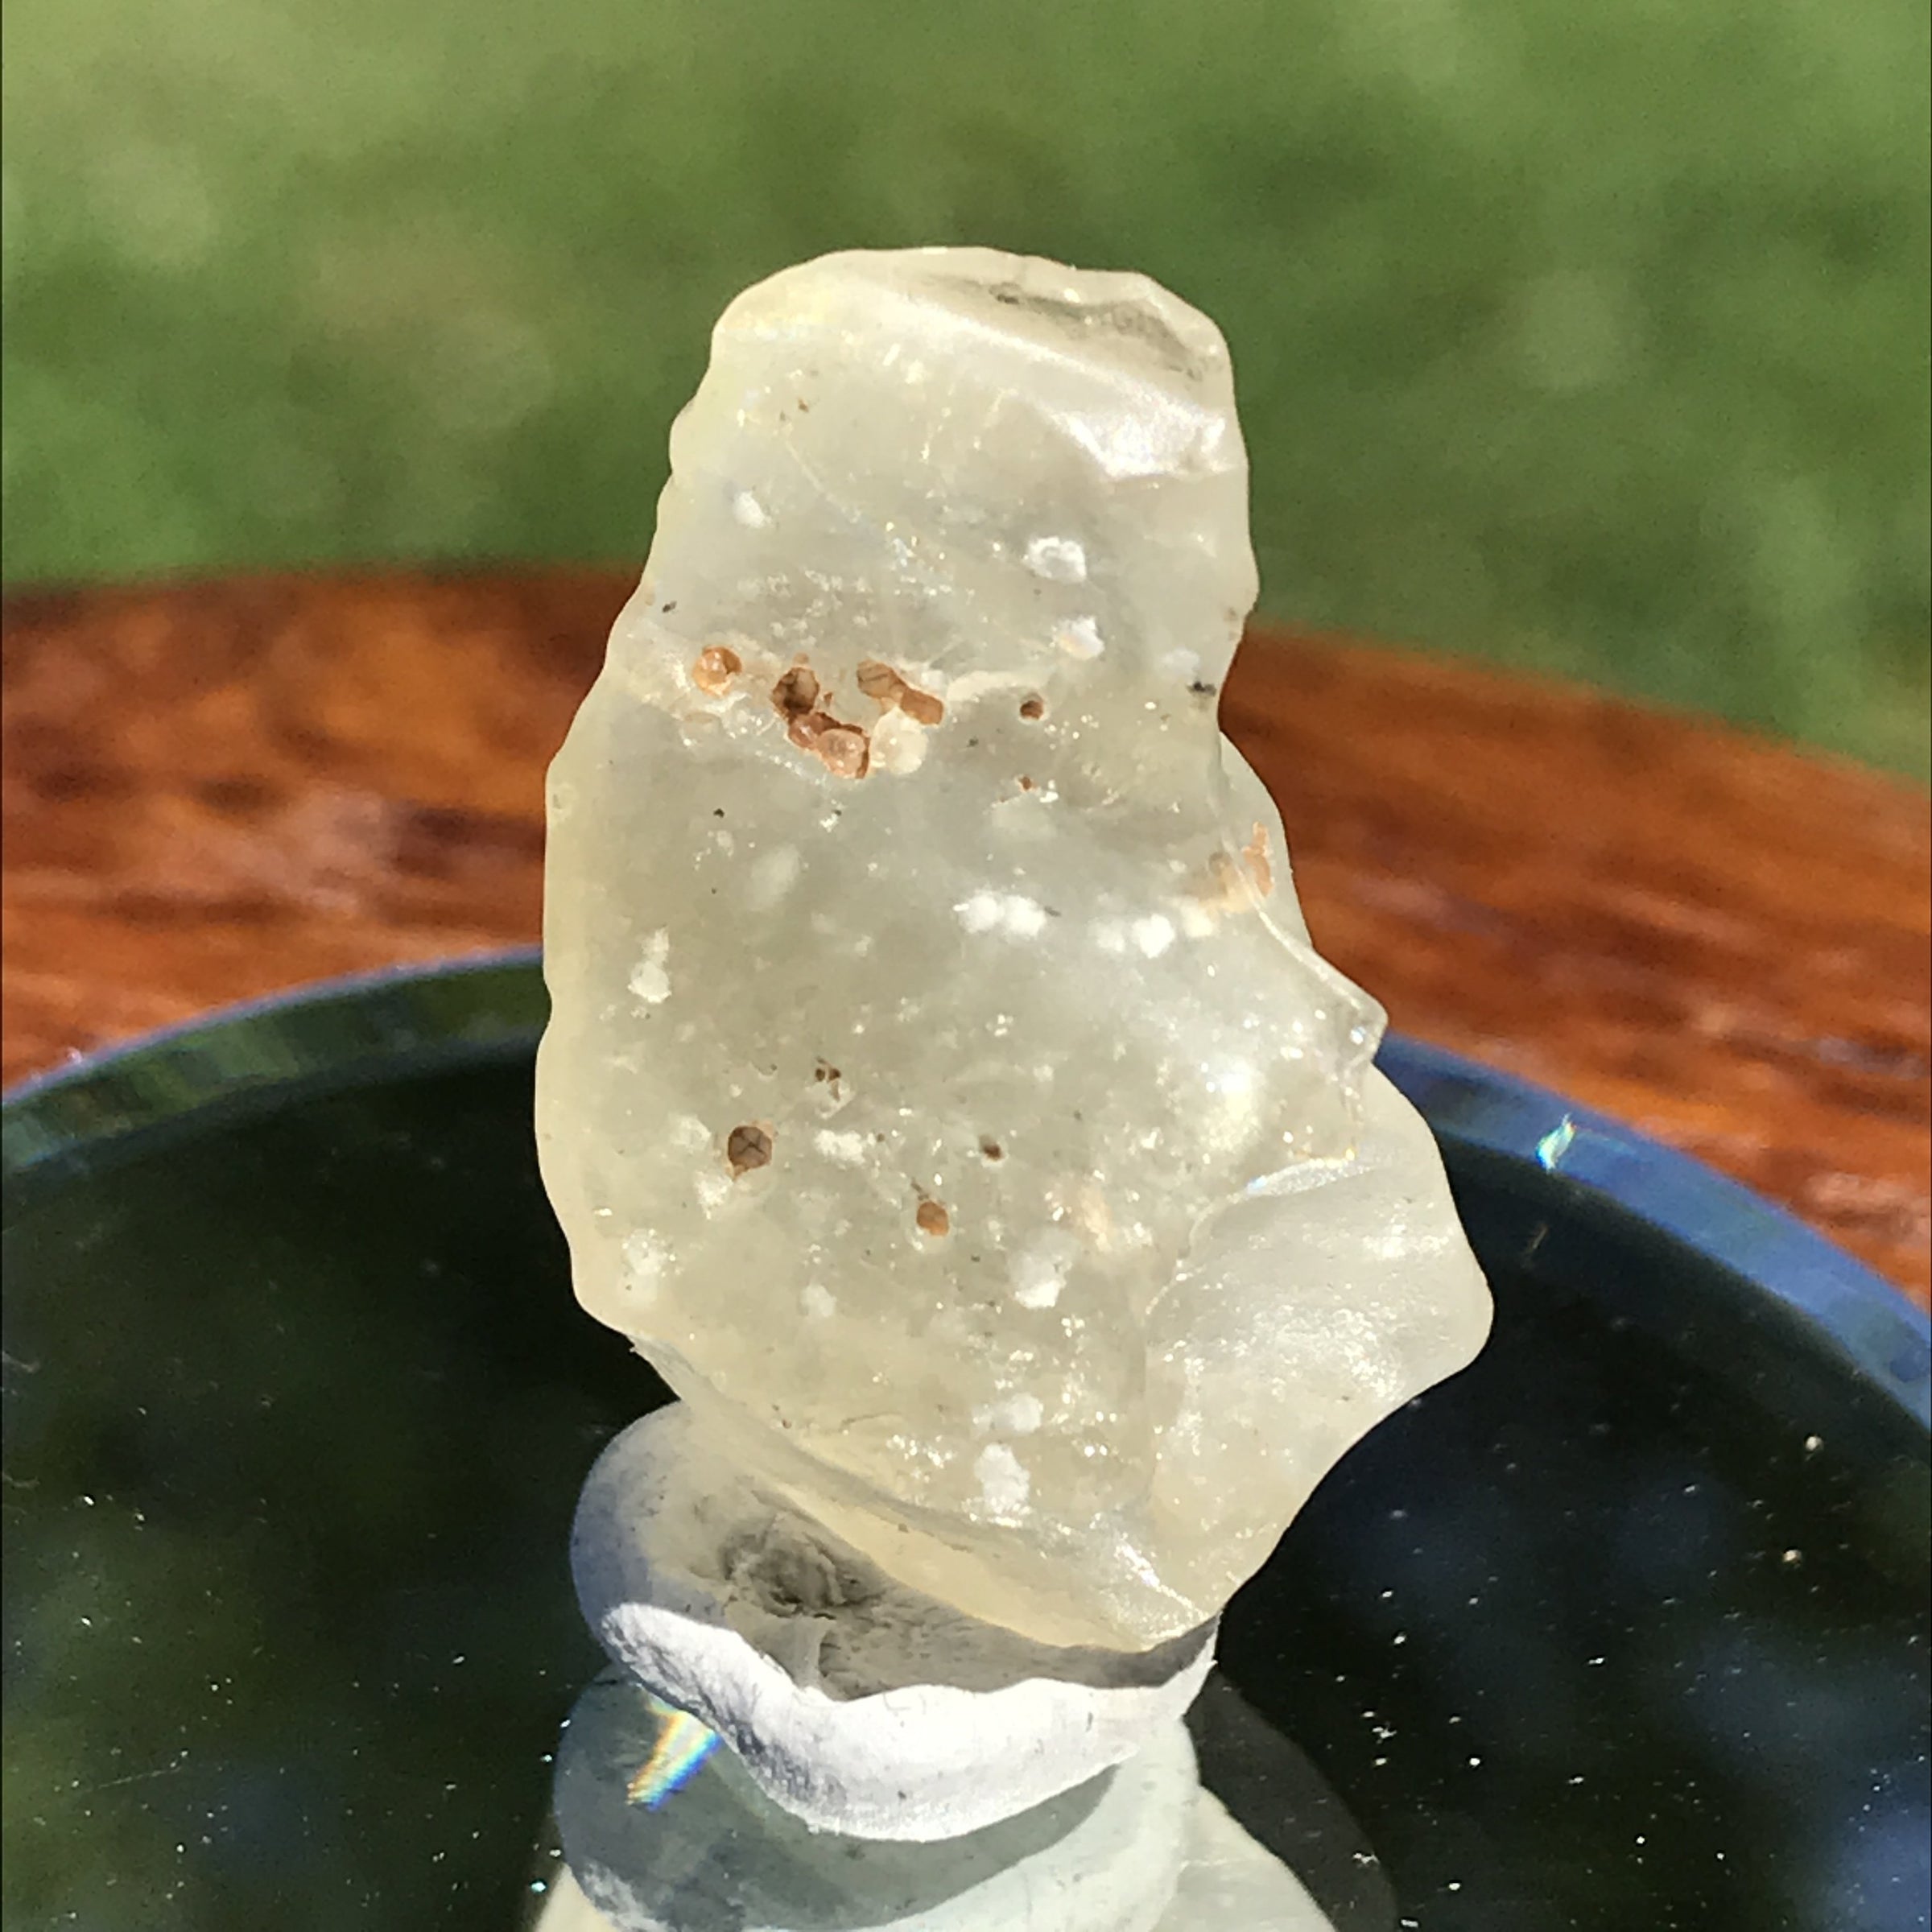 Libyan Desert Glass Tektite 3.9 grams-Moldavite Life